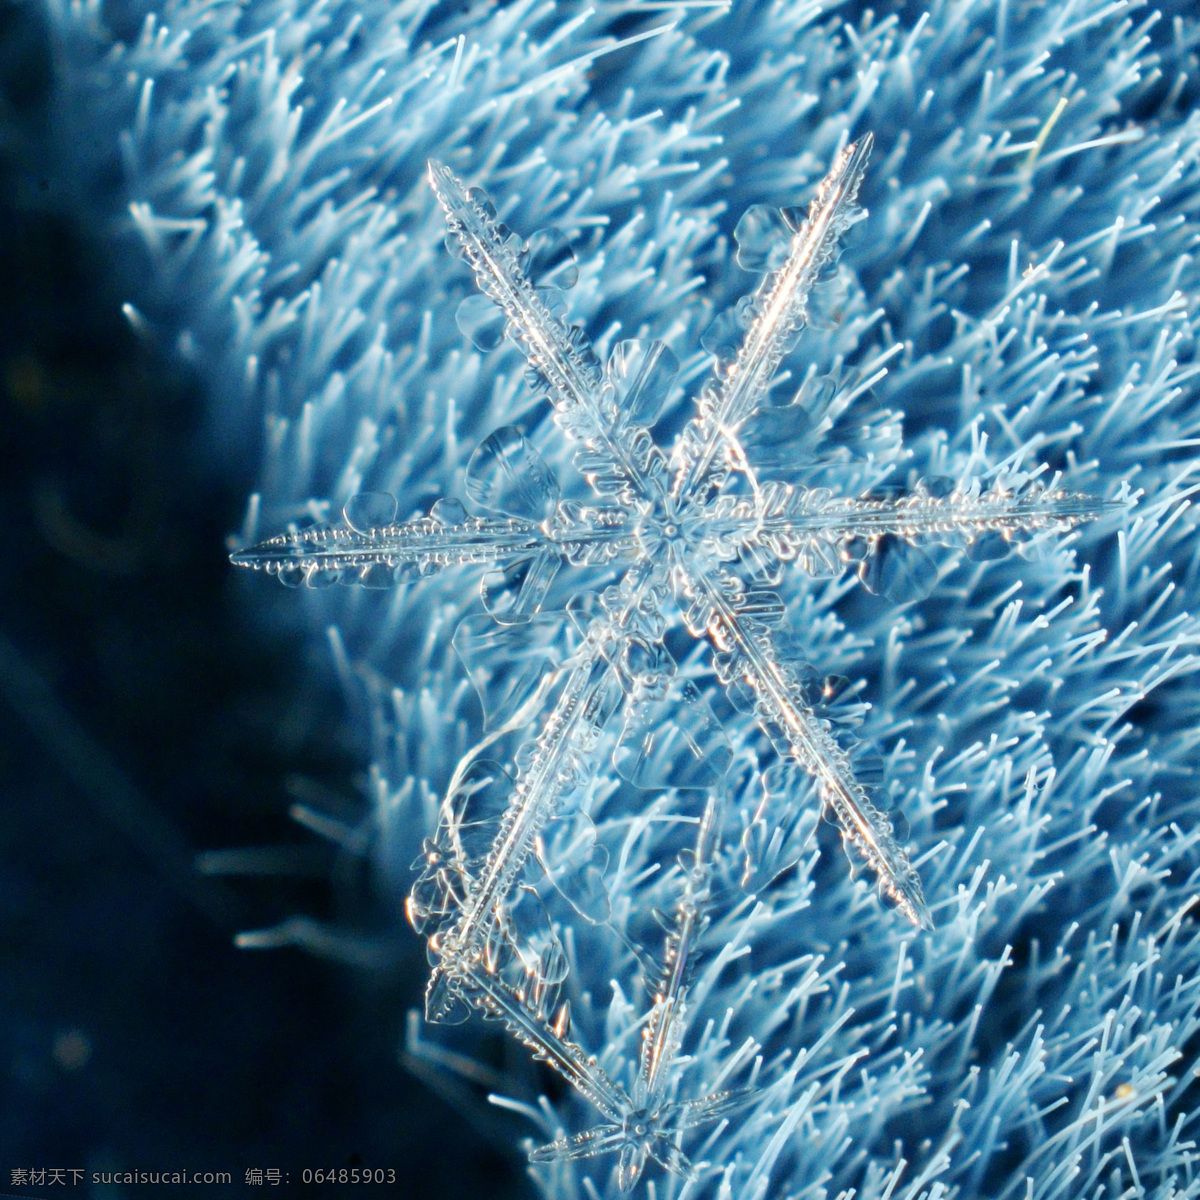 亮晶晶 冰晶 雪花 冰晶雪花 透明 其他生物 生物世界